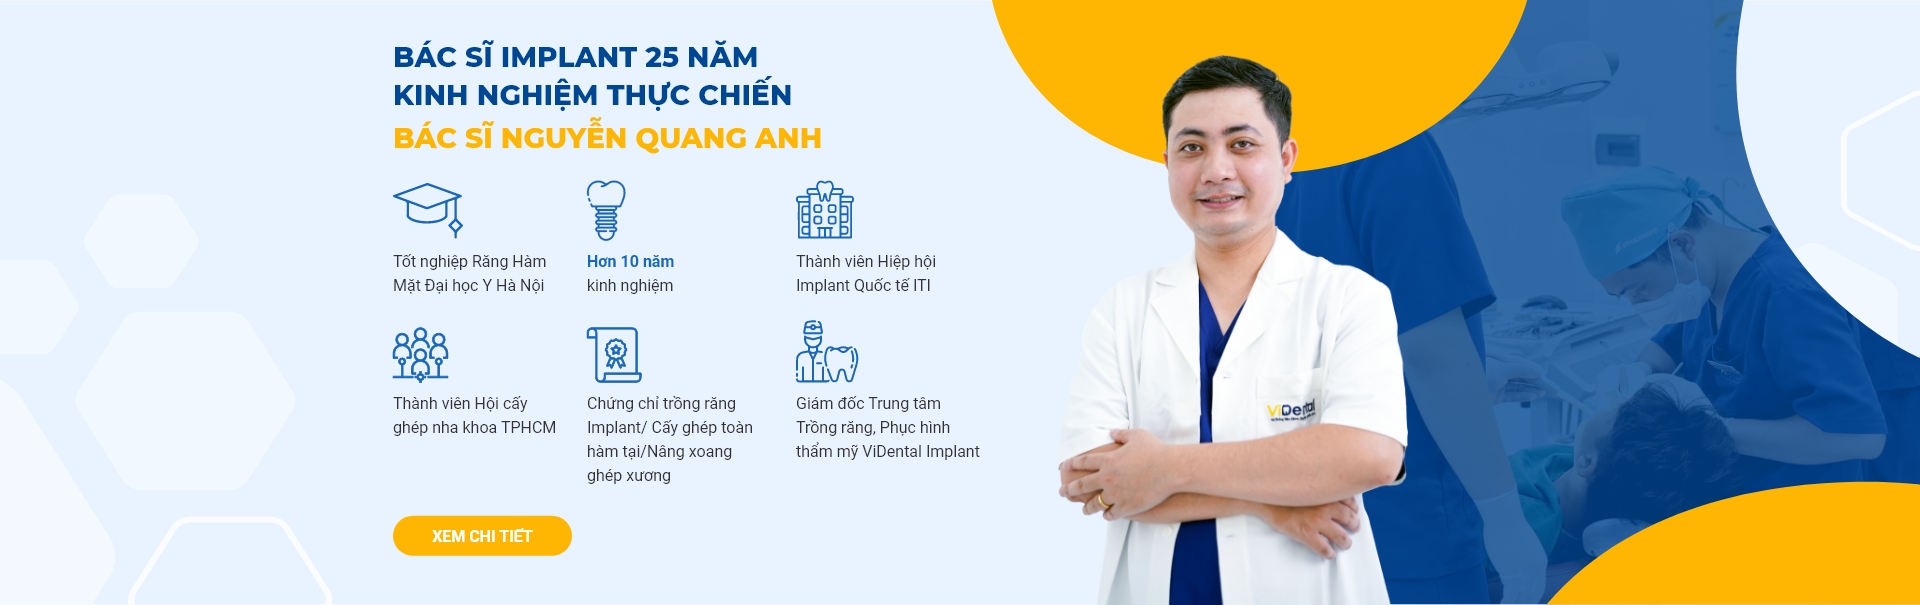 Bác sĩ Nguyễn Quang Anh 